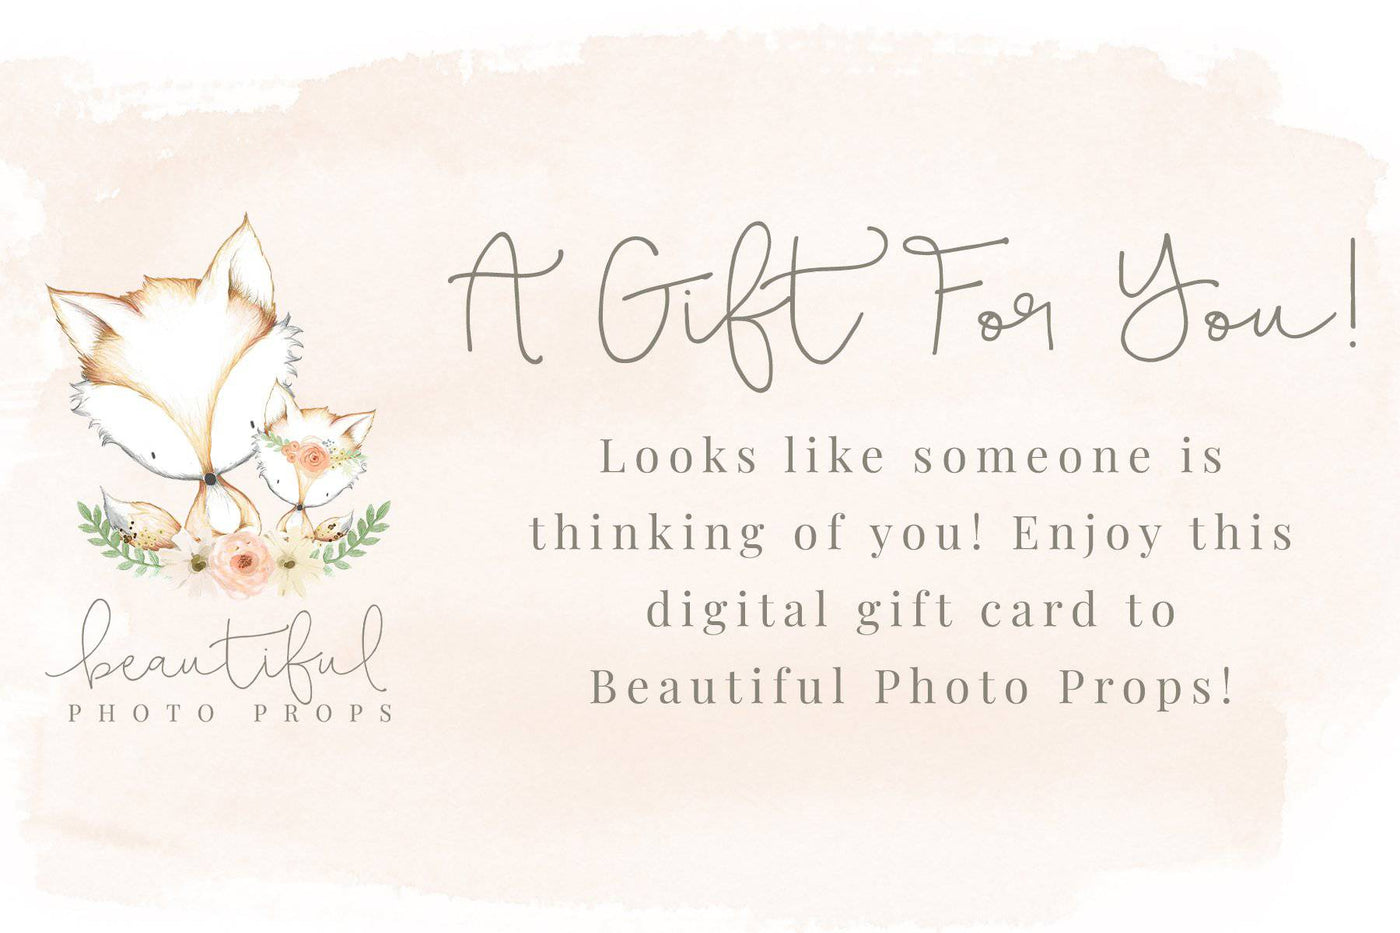 Beautiful Photo Props Gift Certificate - Beautiful Photo Props